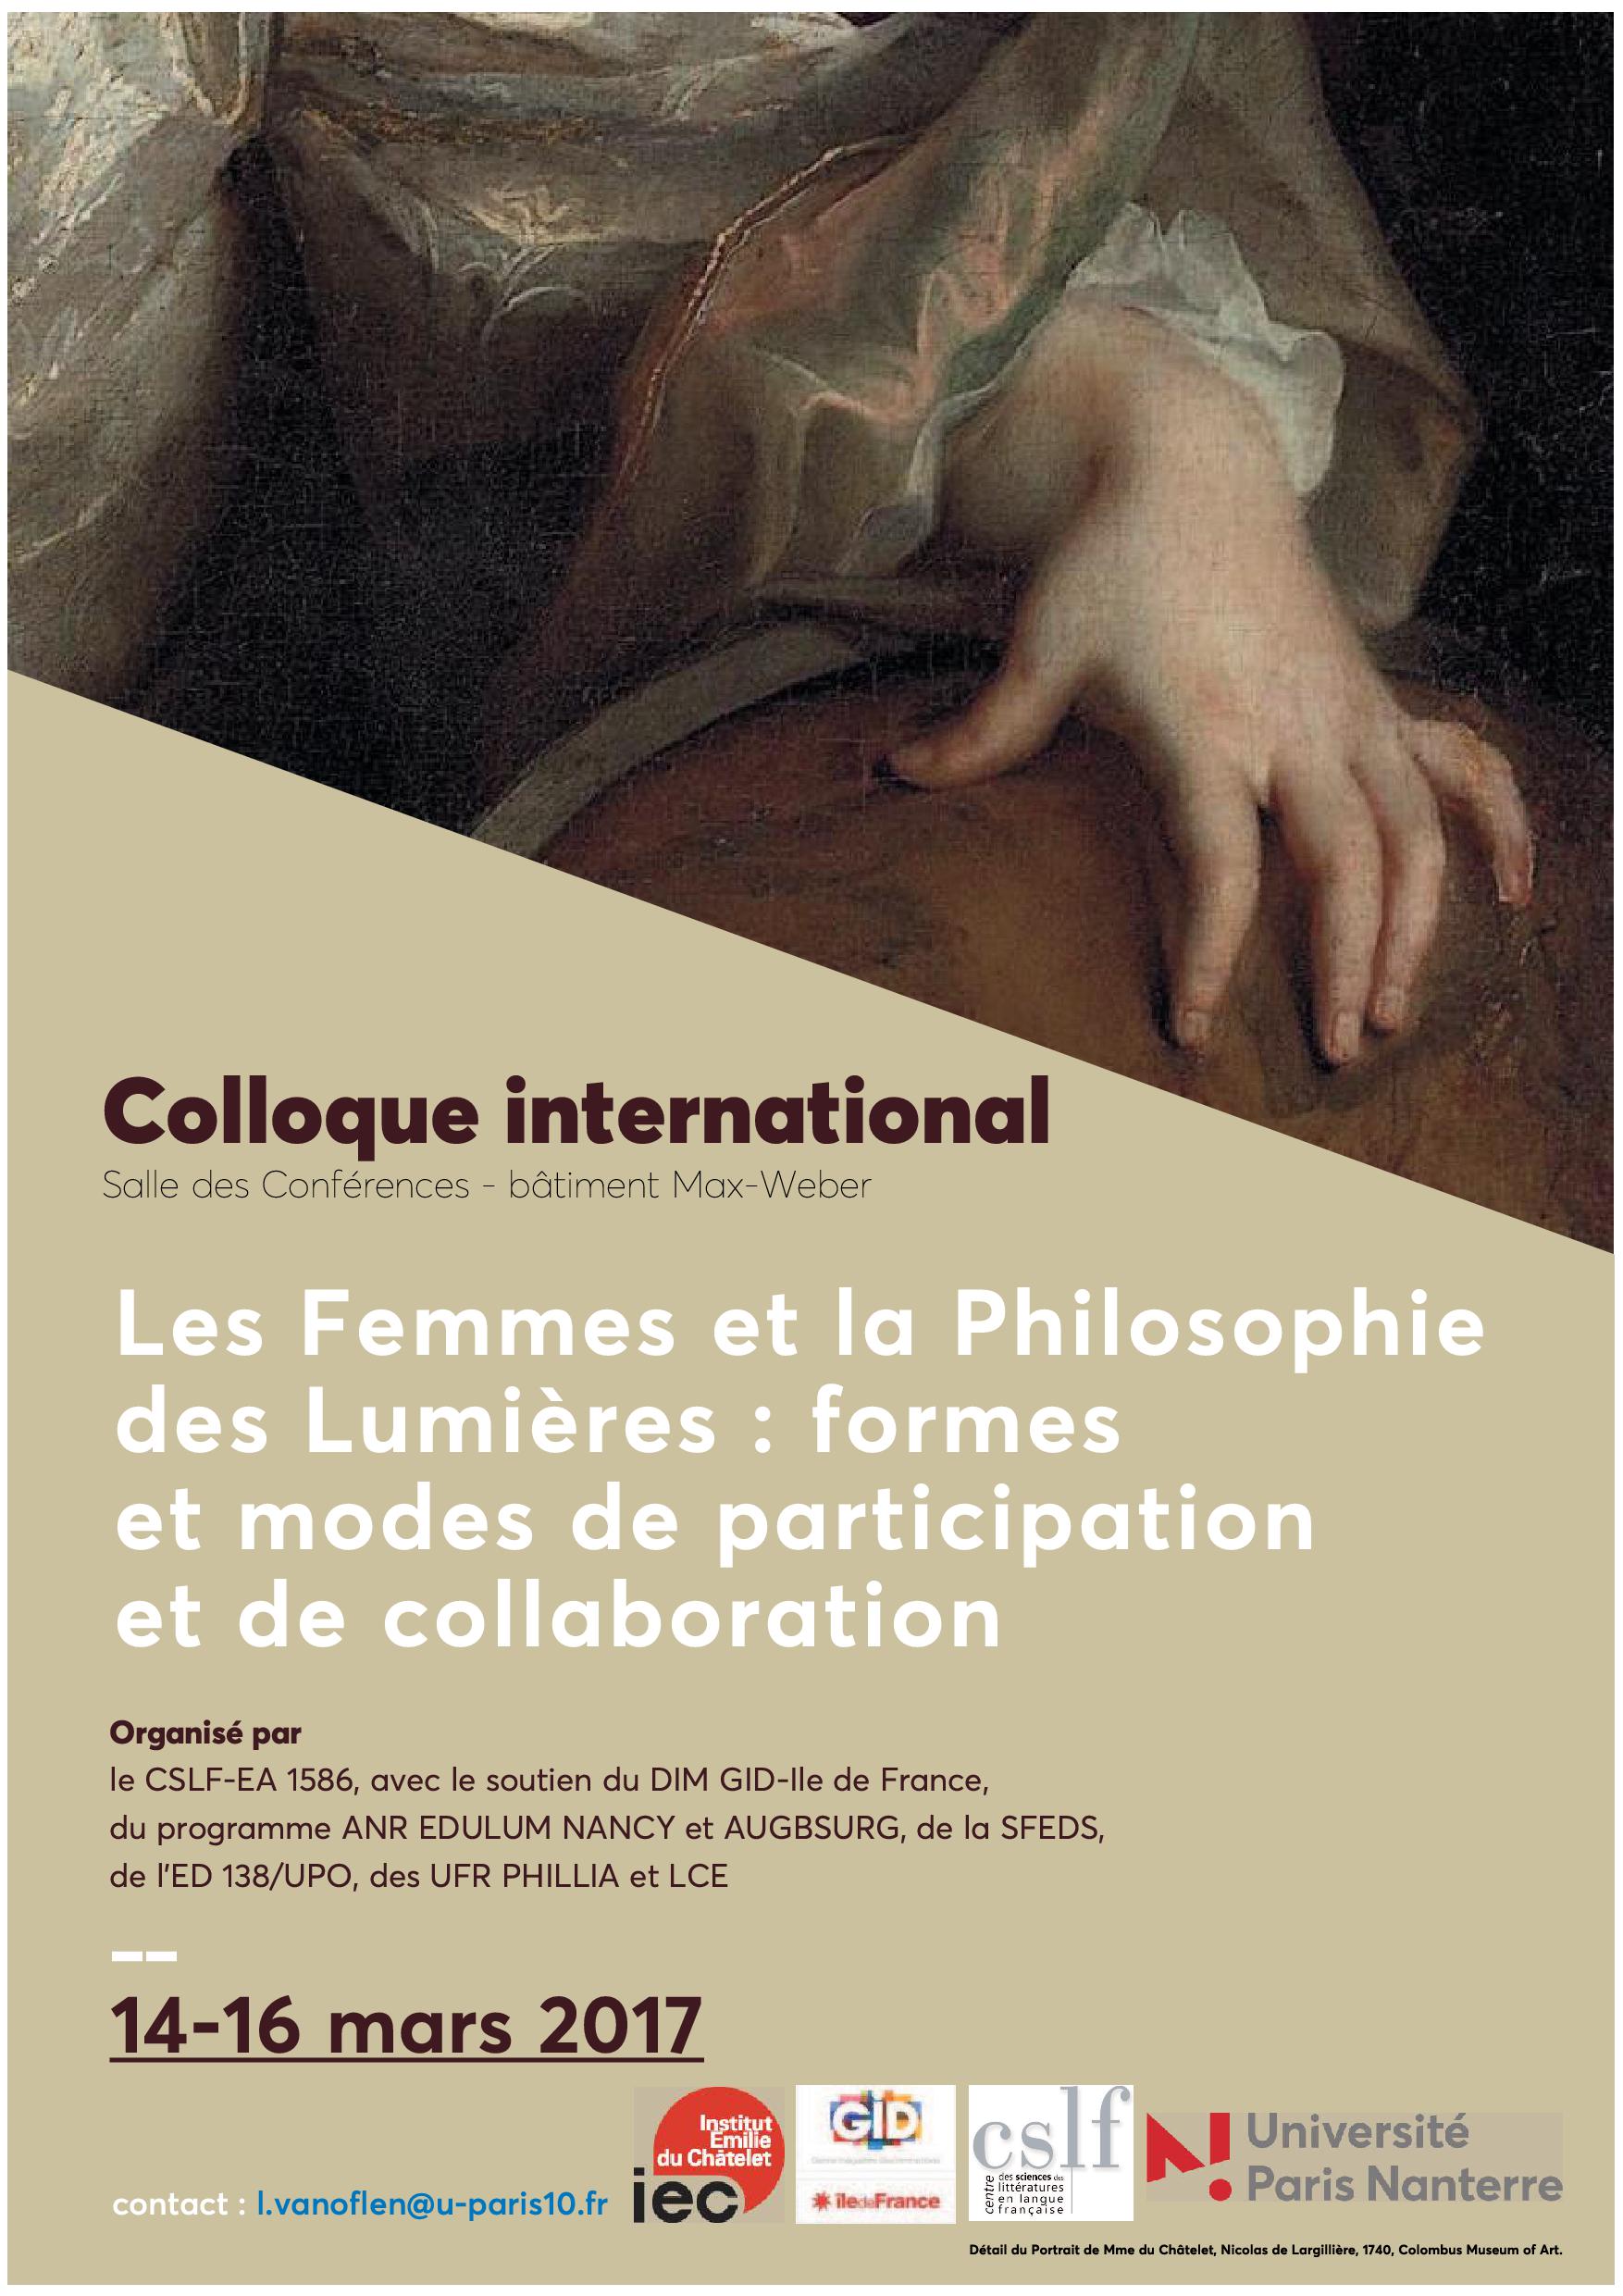 Les Femmes et la Philosophie des Lumières : formes et modes de participation et de collaboration (Nanterre)